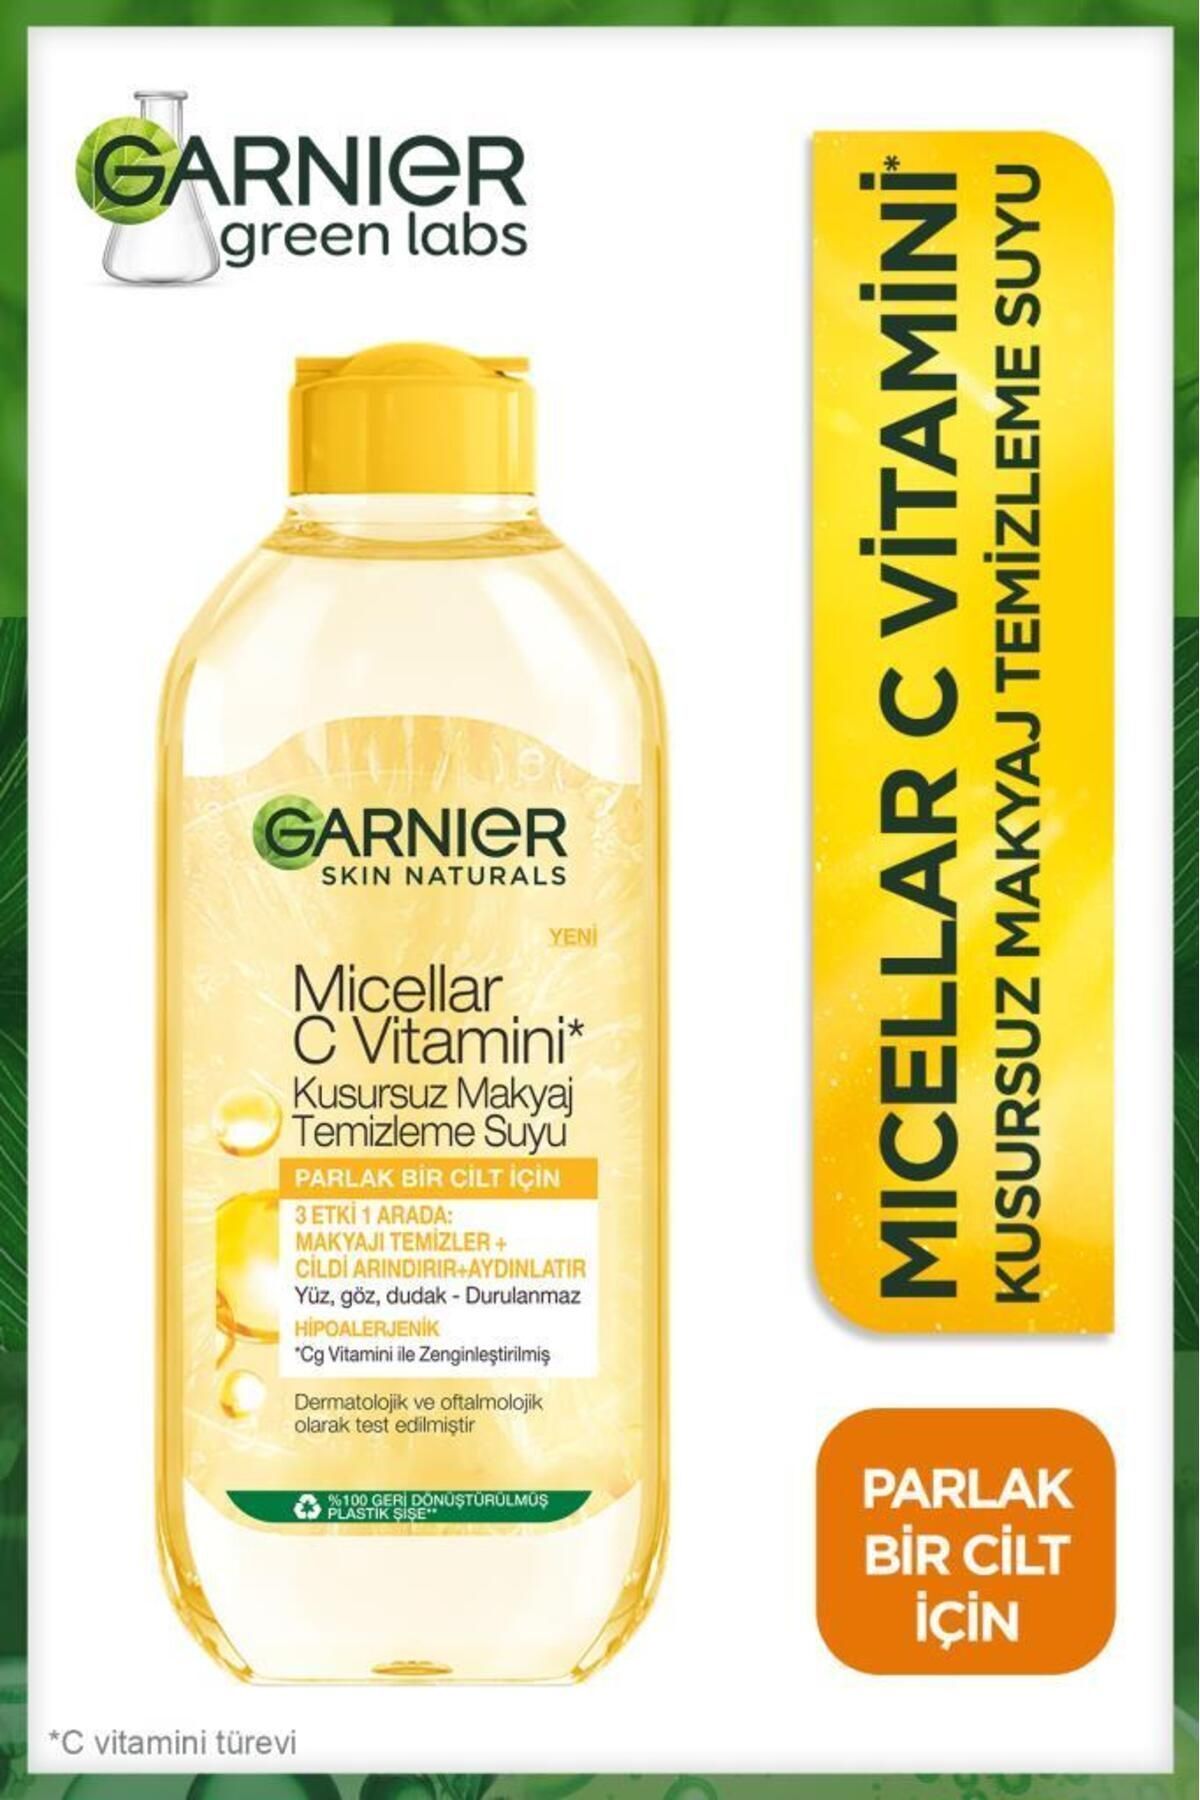 Garnier Micellar C Vitamini Kusursuz Makyaj Temizleme Suyu 400ml